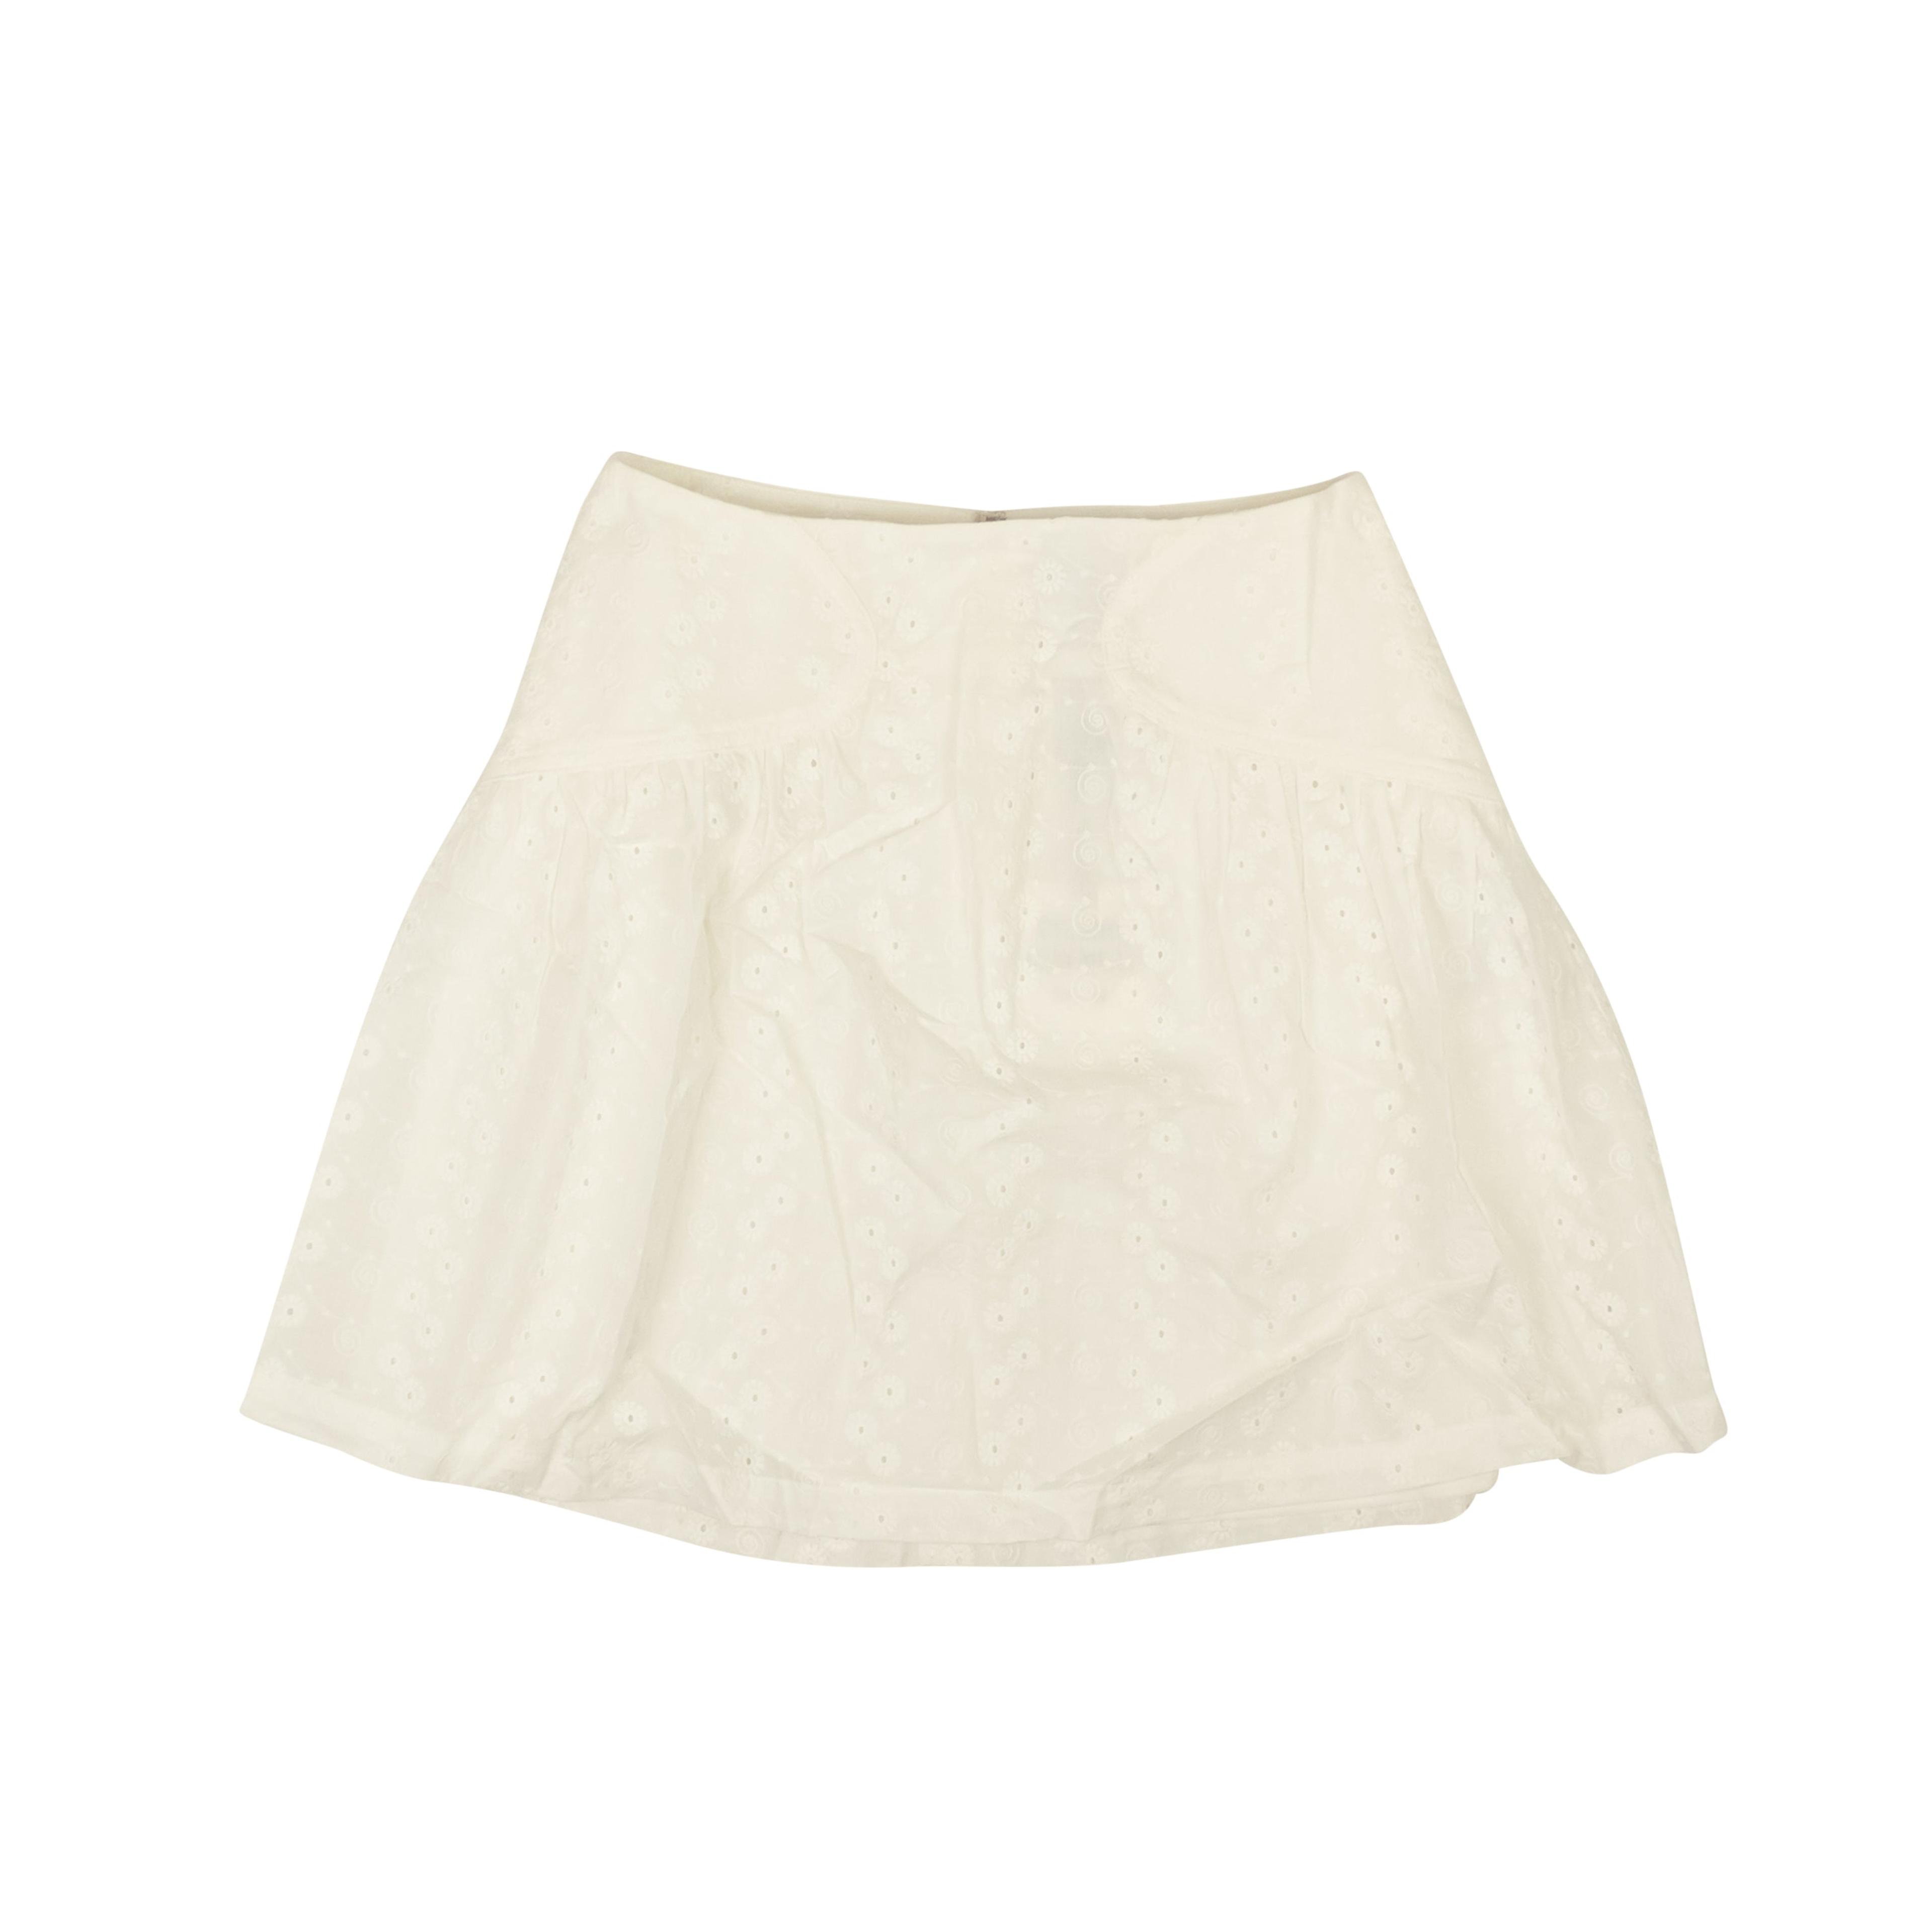 Optic White Cotton Eyelet Mini Skirt